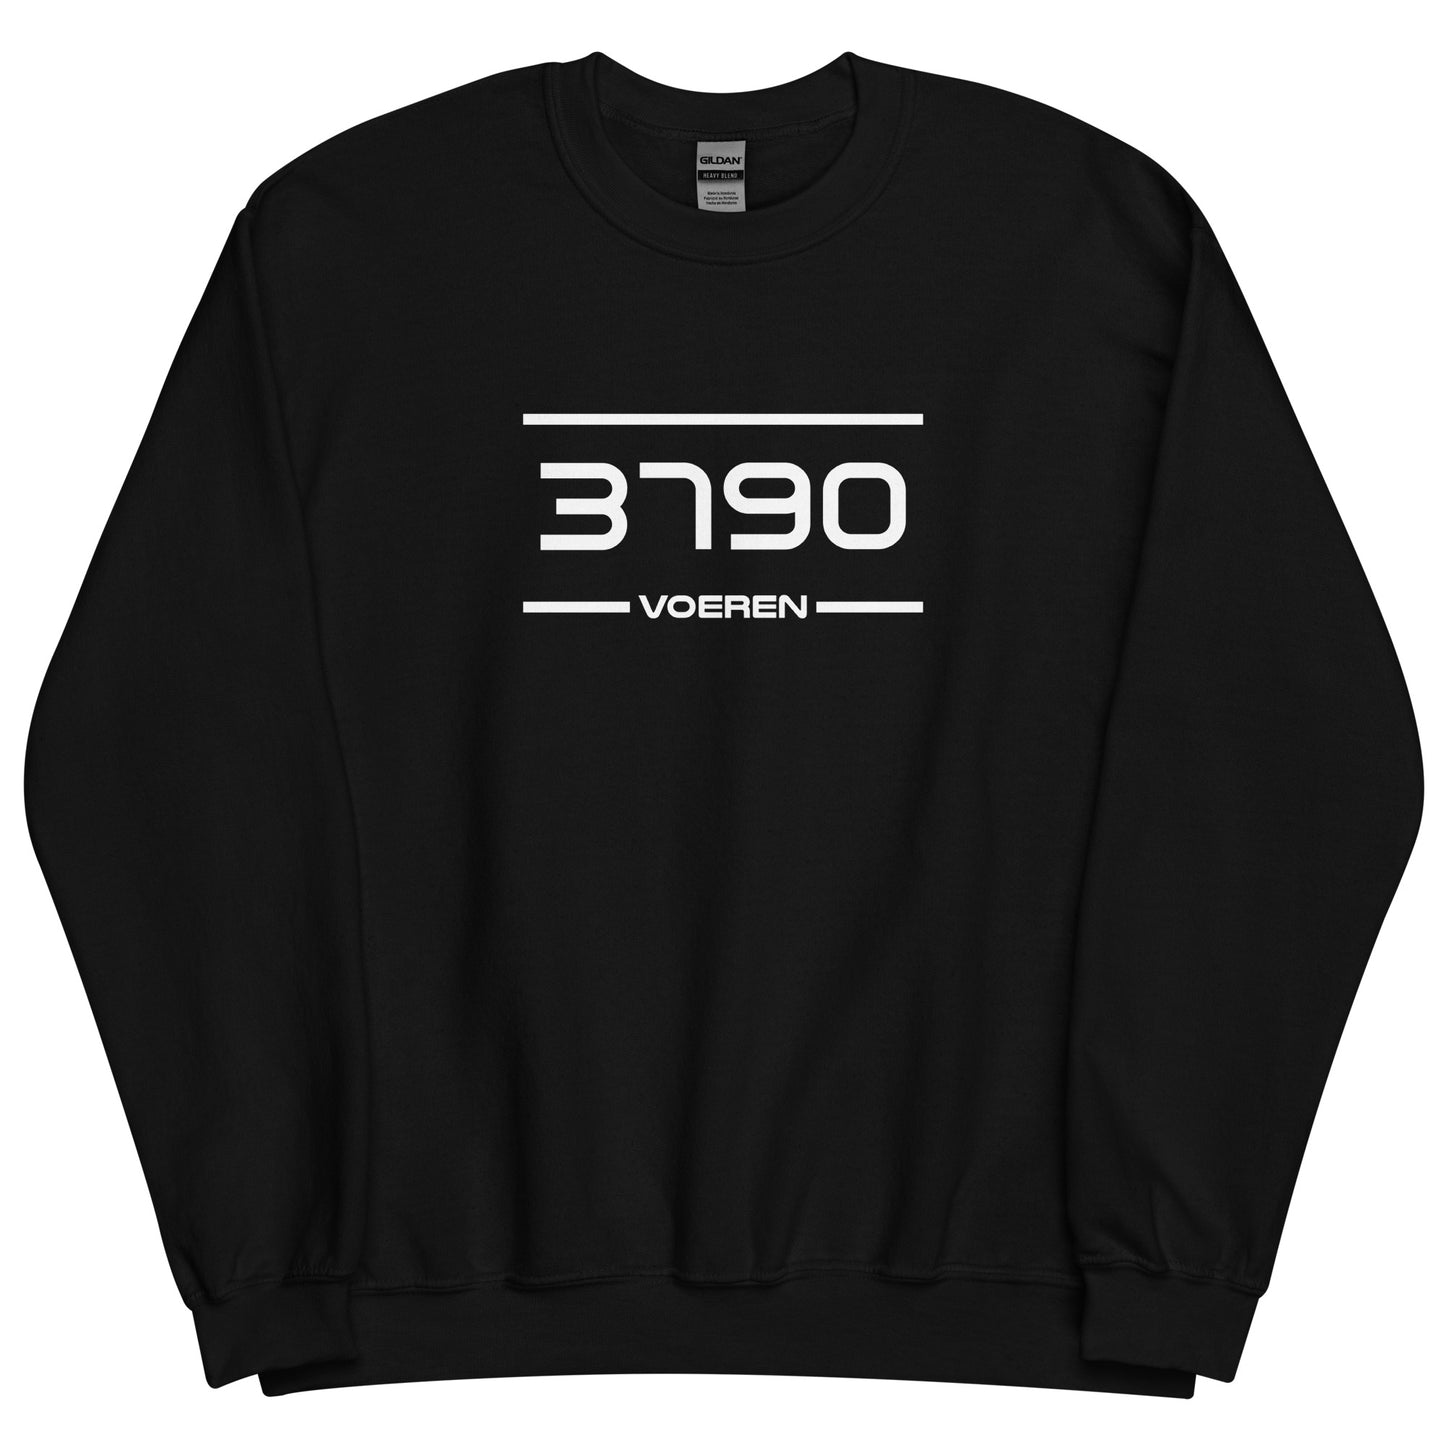 Sweater - 3790 - Voeren (M/V)